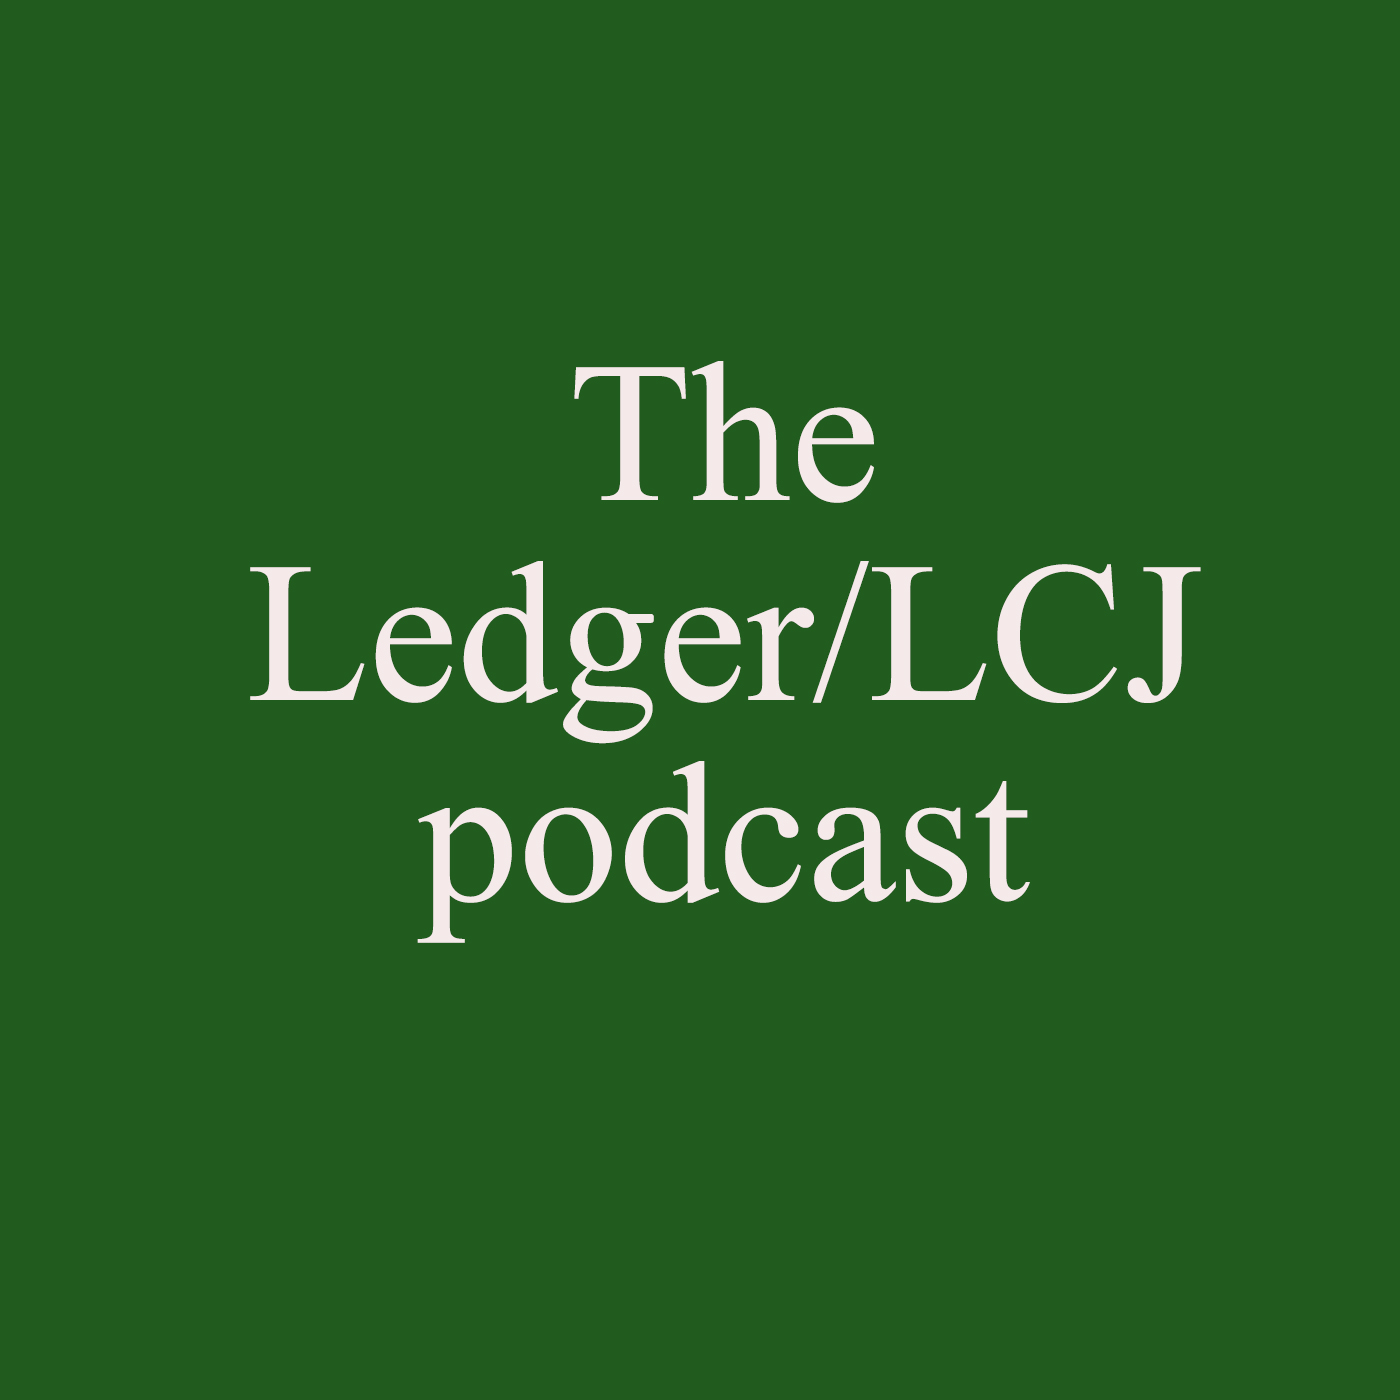 Artwork for podcast Ledger/LCJ podcast